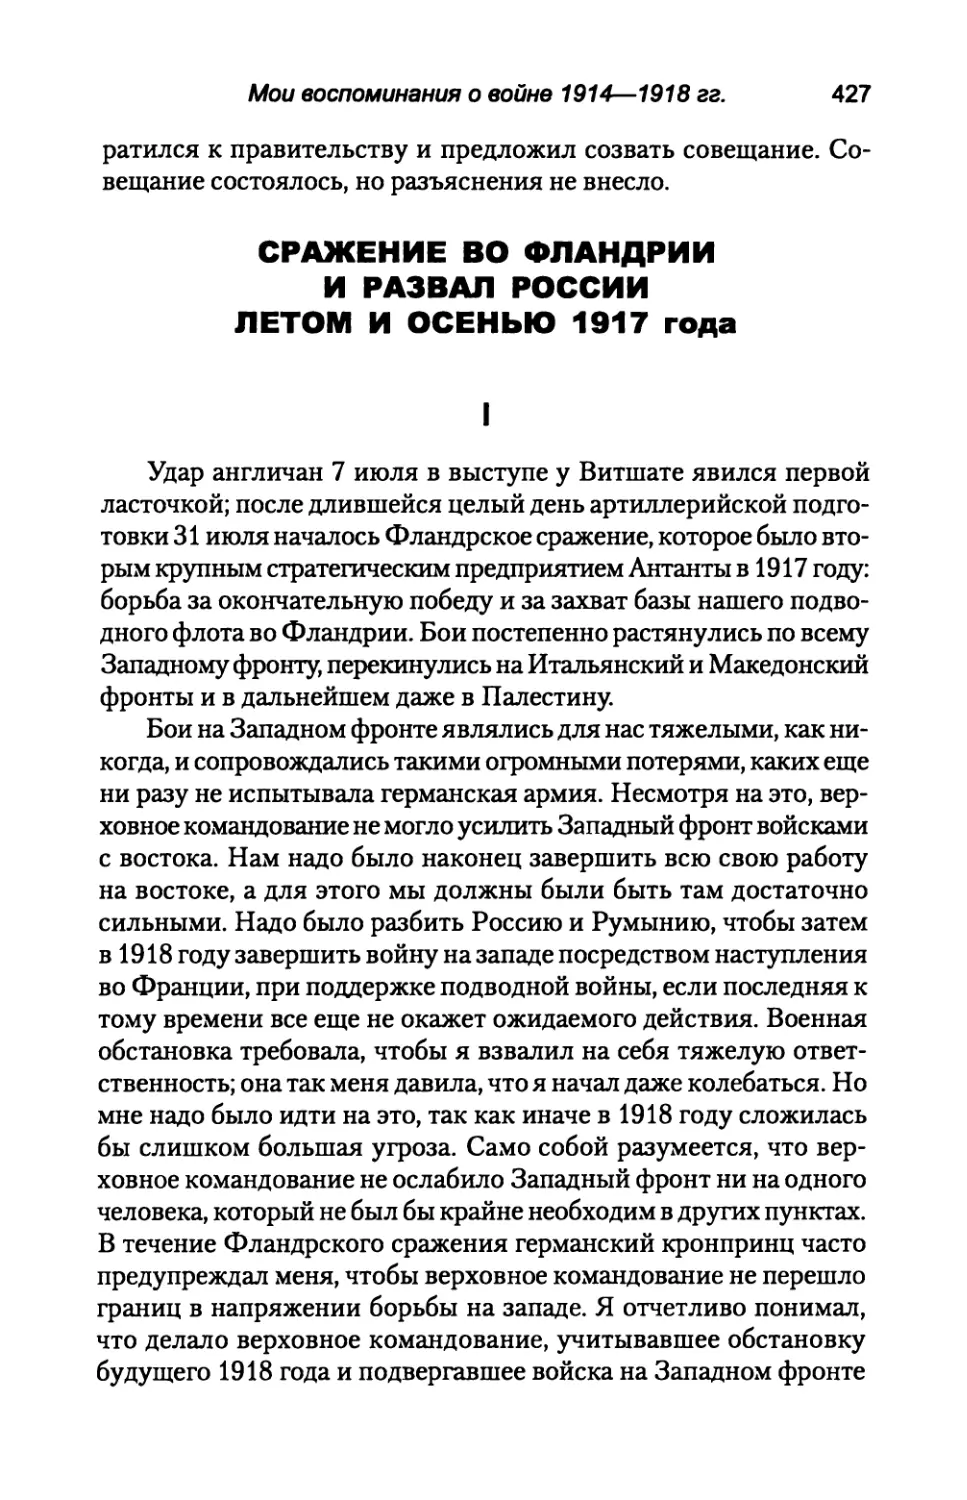 СРАЖЕНИЕ  ВО  ФЛАНДРИИ  И  РАЗВАЛ  РОССИИ ЛЕТОМ  И  ОСЕНЬЮ  1917  года